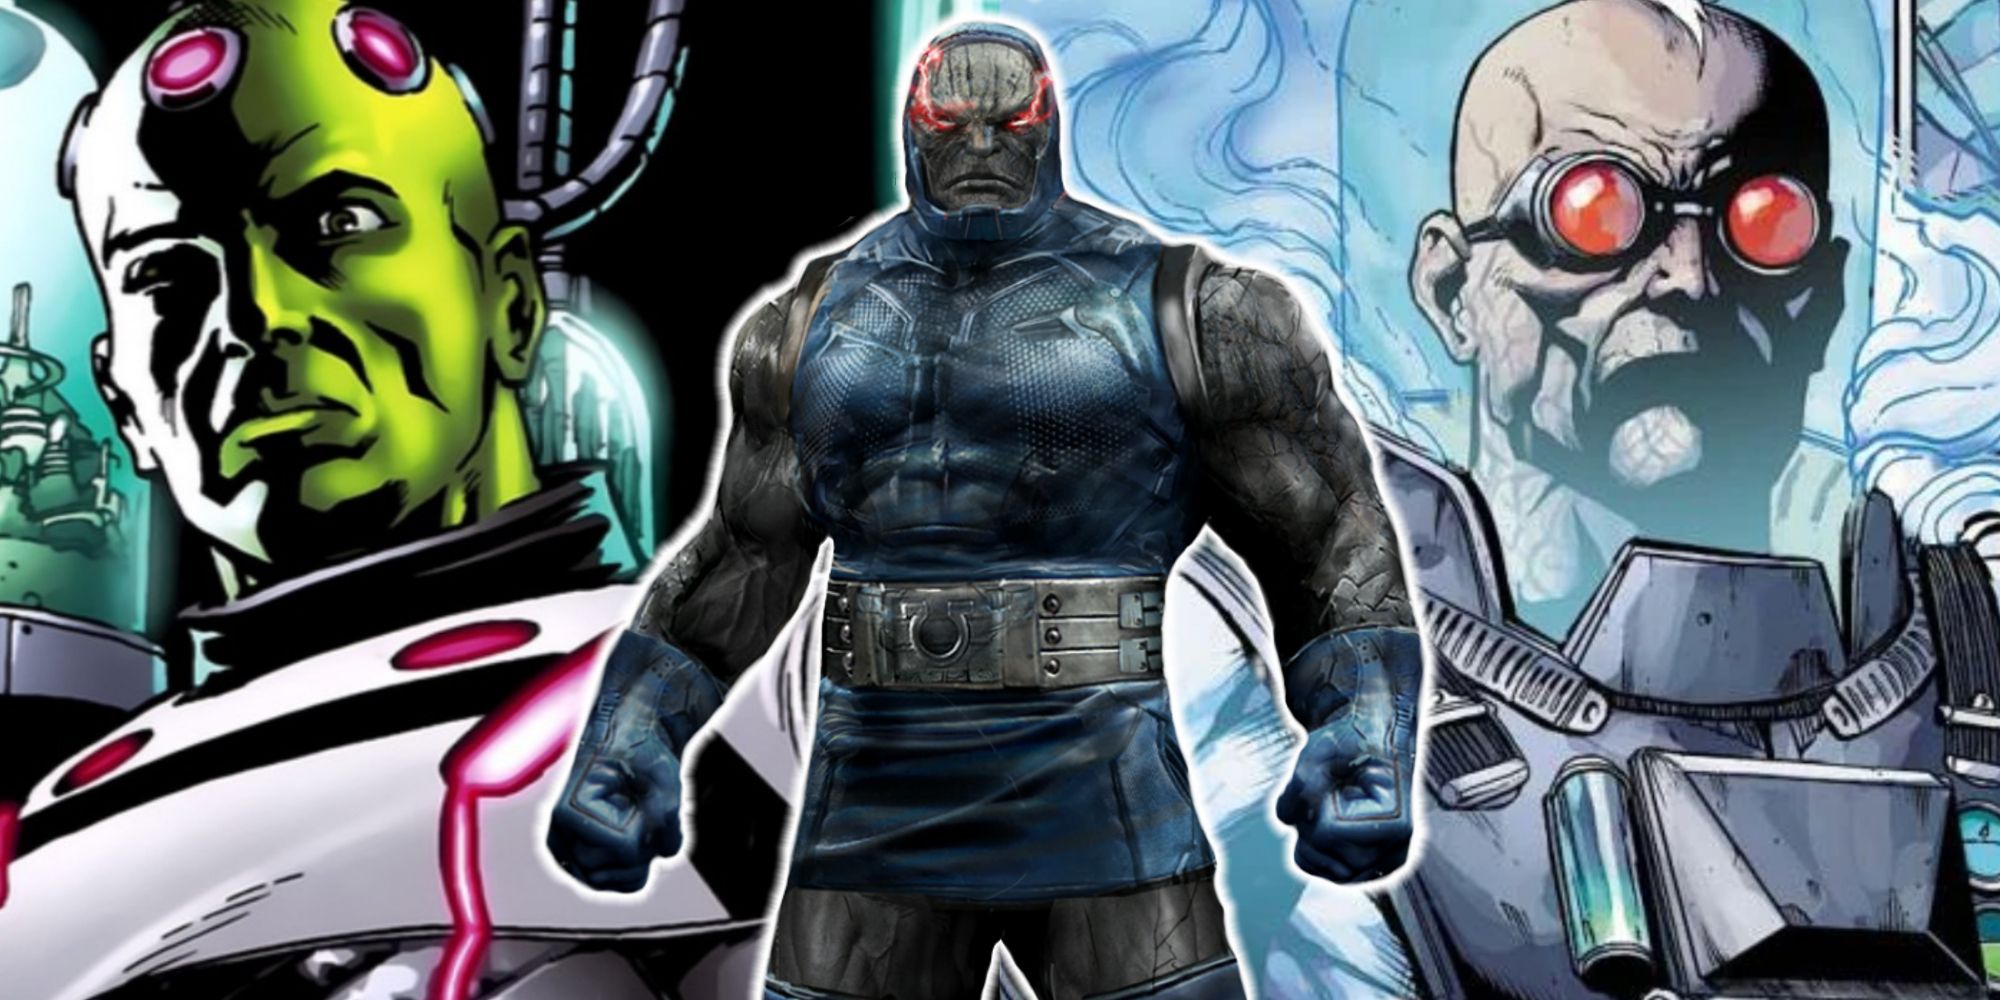 Split image of Brainiac, Mr. Freeze, and Darkseid